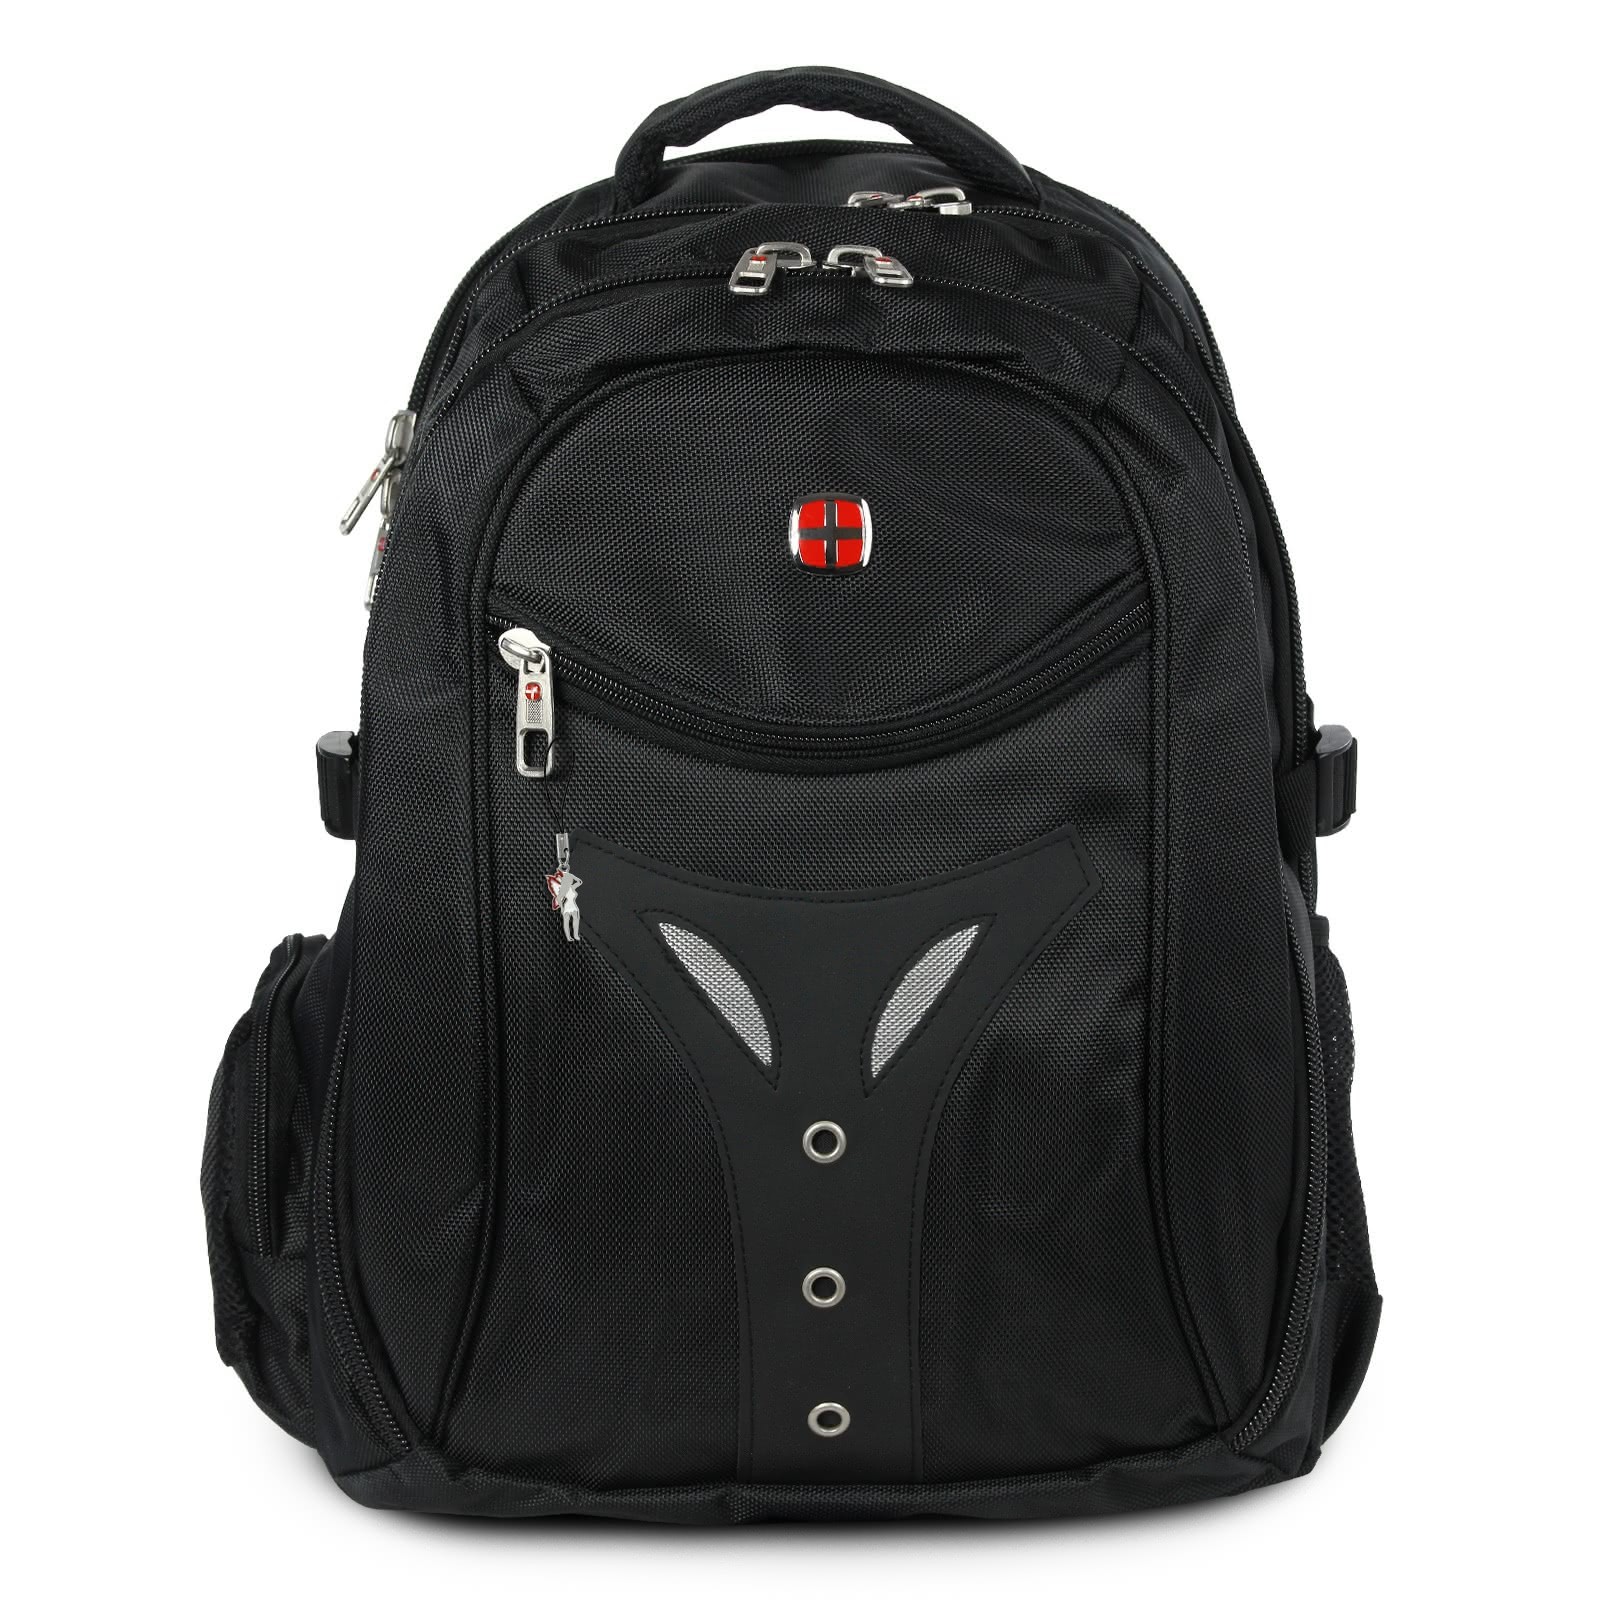 Rucksack, Notebooktasche Polyester schwarz Laptoprucksack New Bags OTD601S